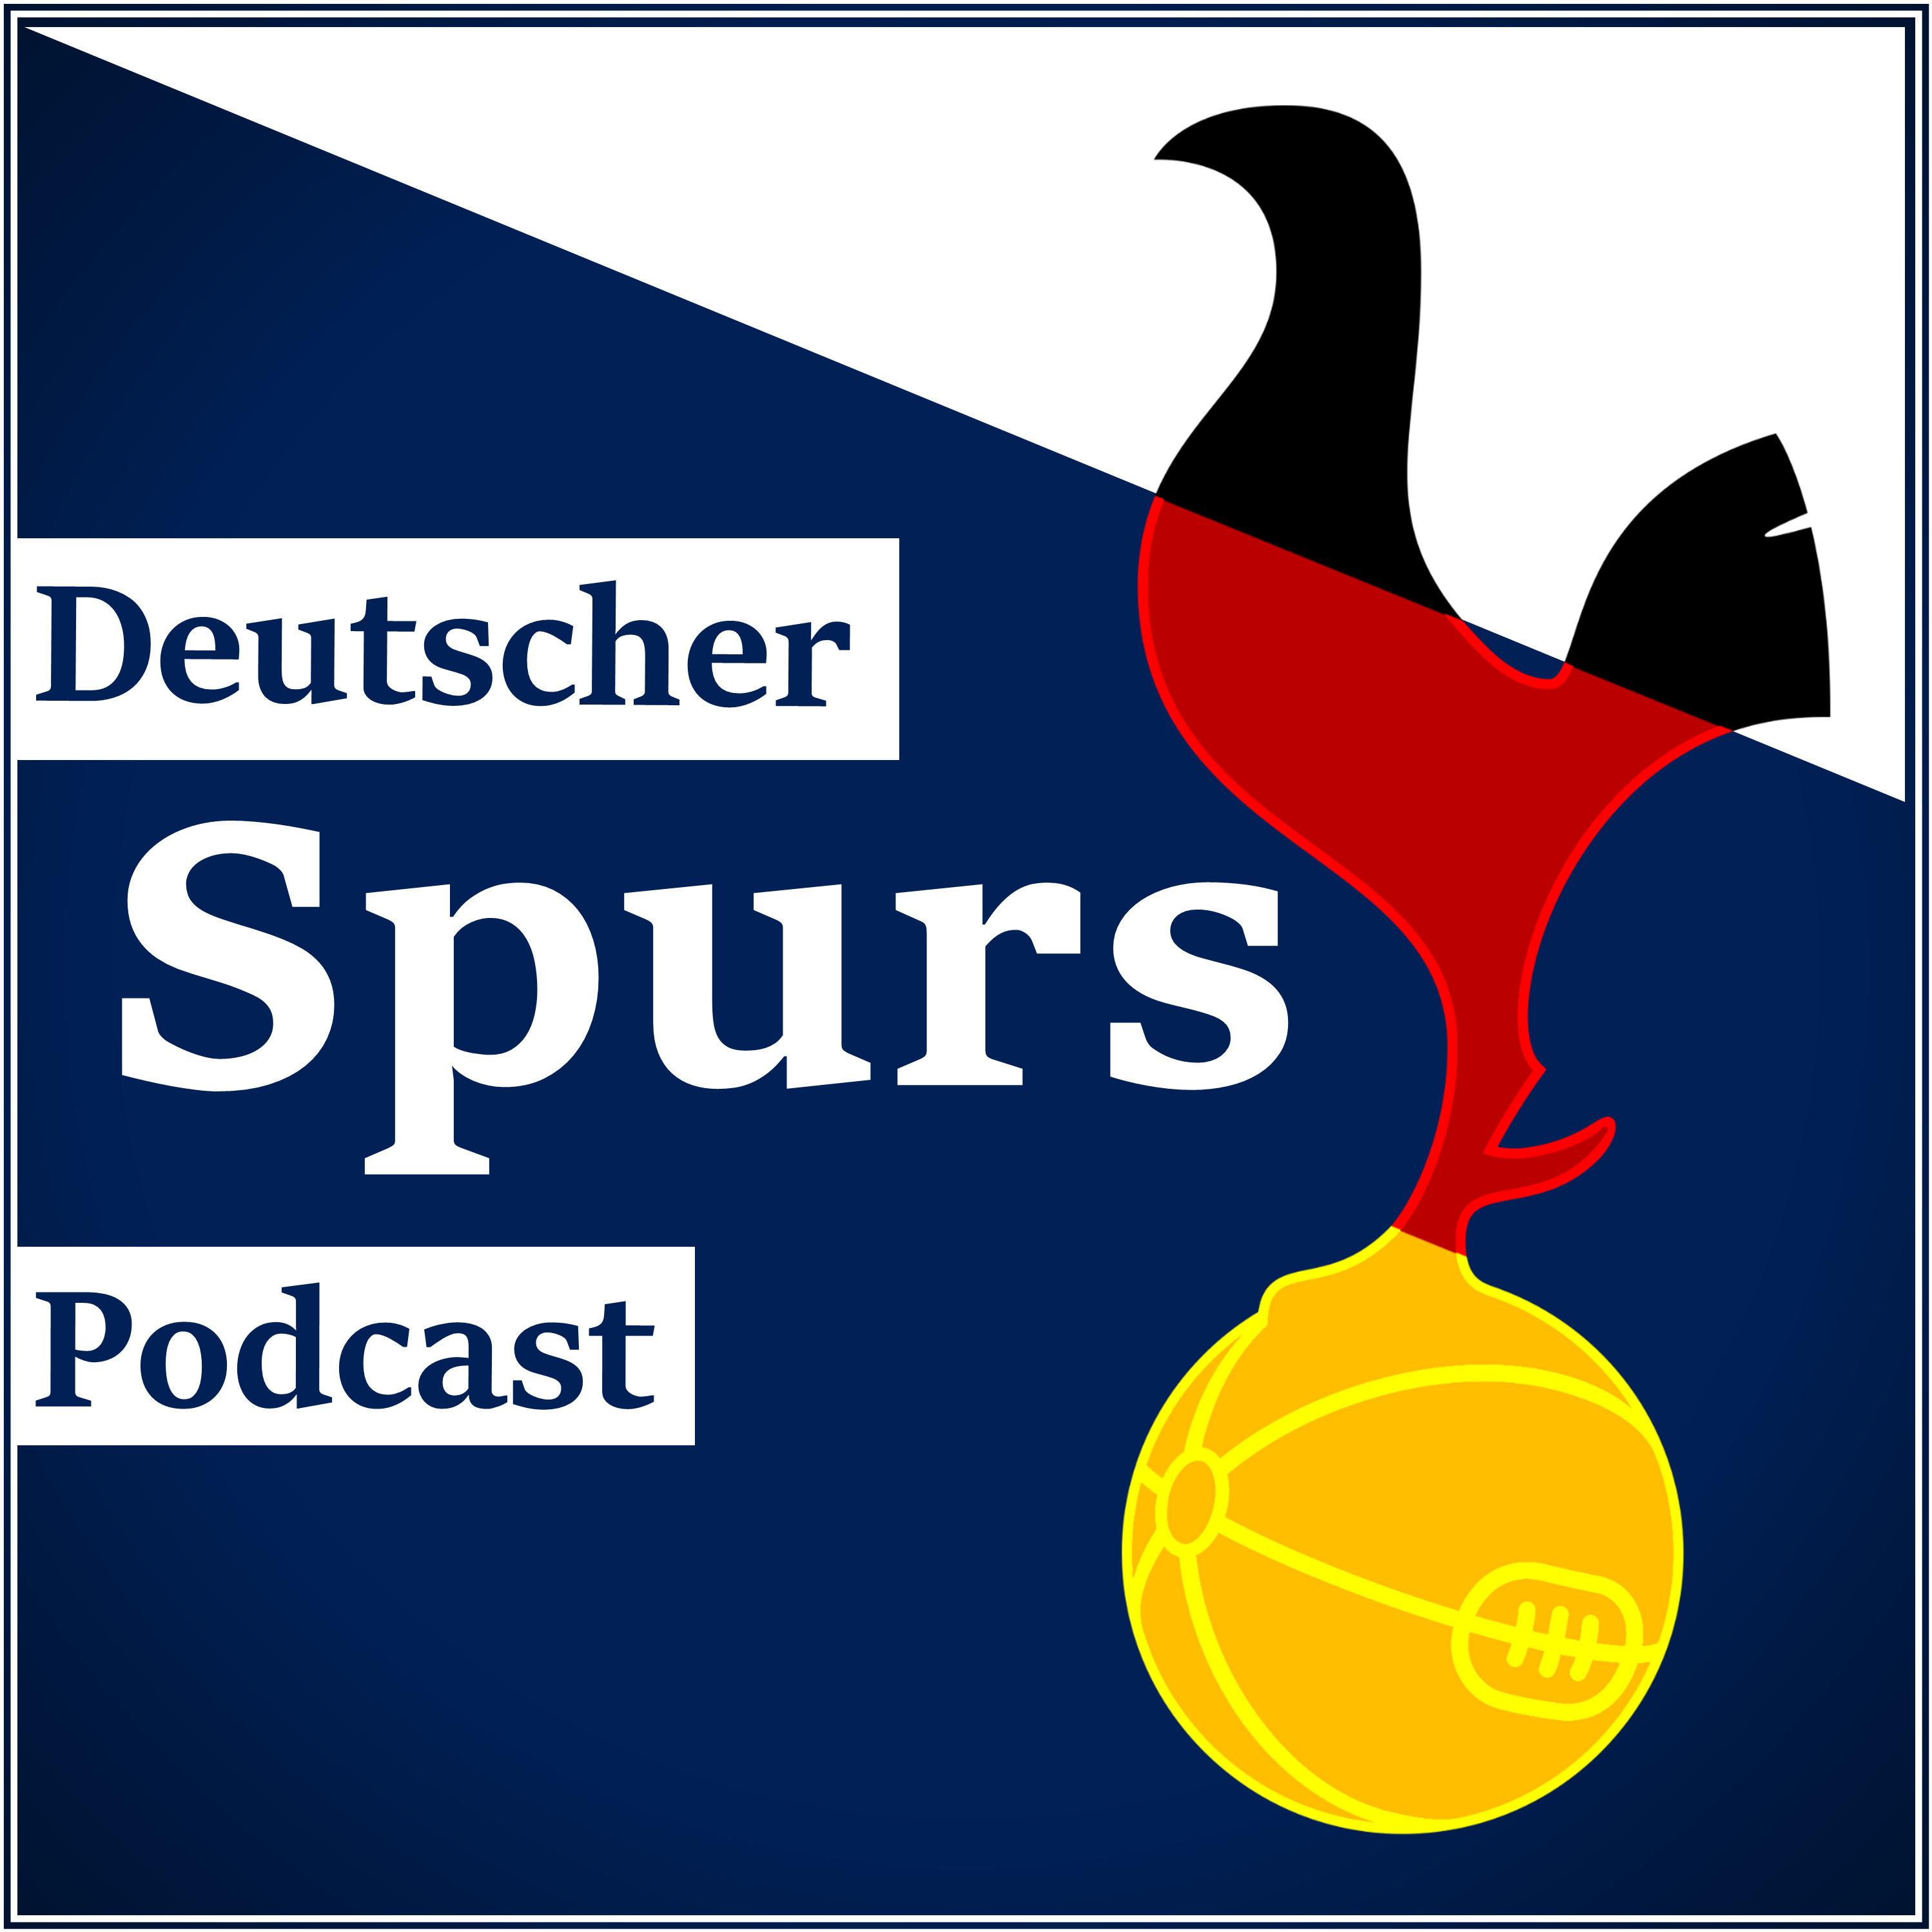 Deutscher Spurs Podcast